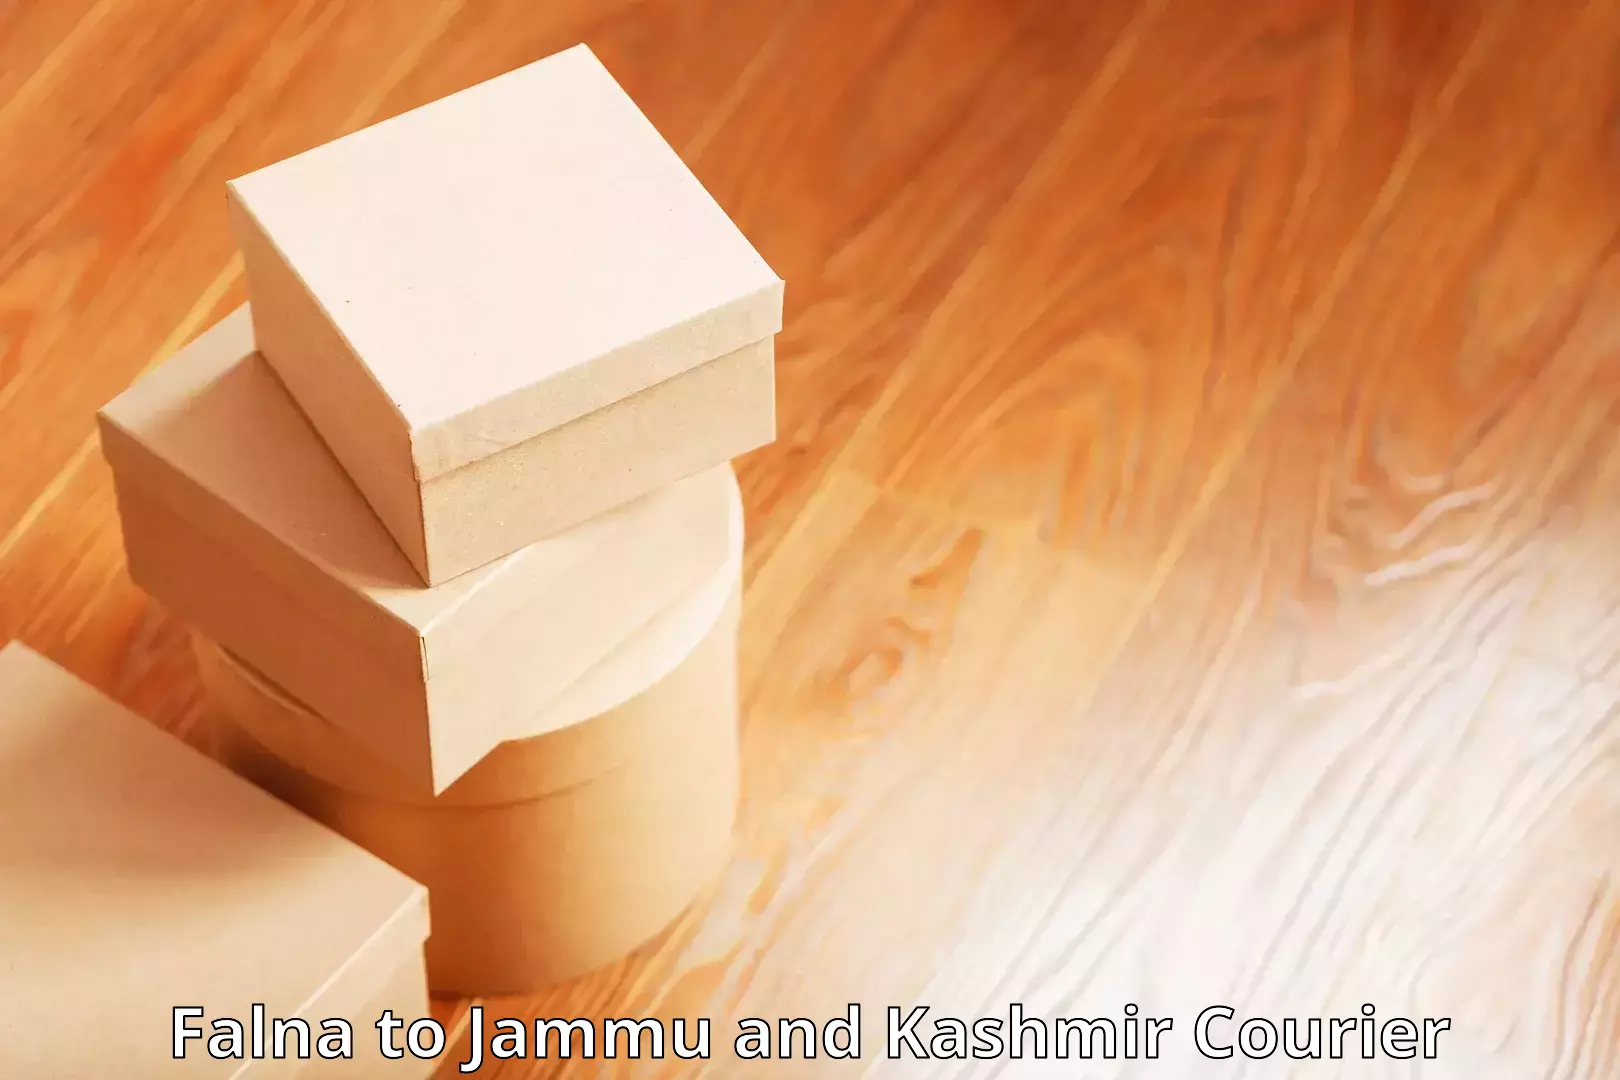 Express courier facilities Falna to Jammu